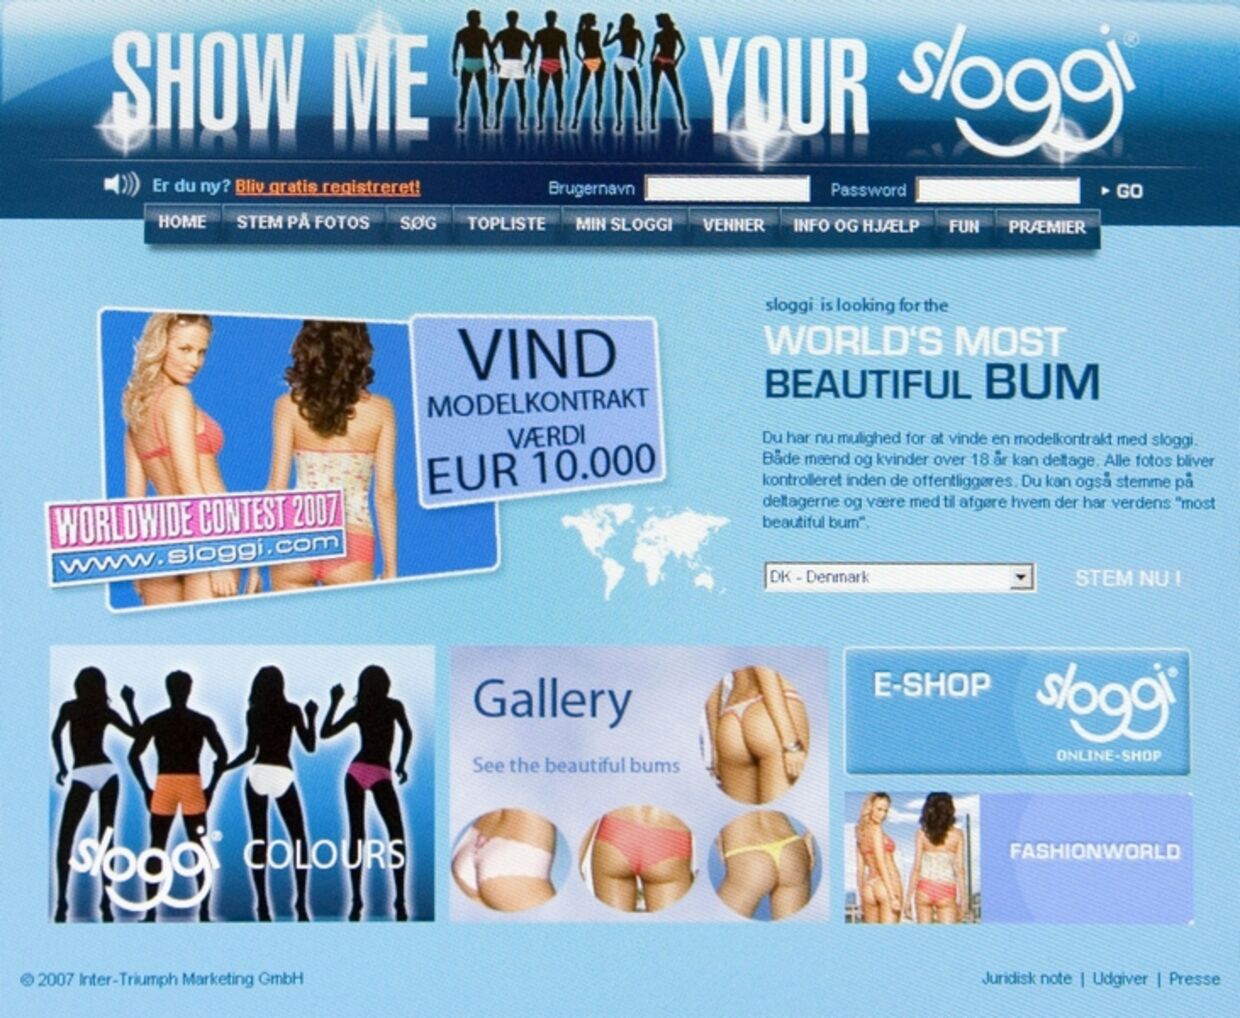 10.000 euro er værdien af den modelkontrakt, Sloggi lokker med for at få unge til at lægge billeder af sig selv i undertøj på nettet.